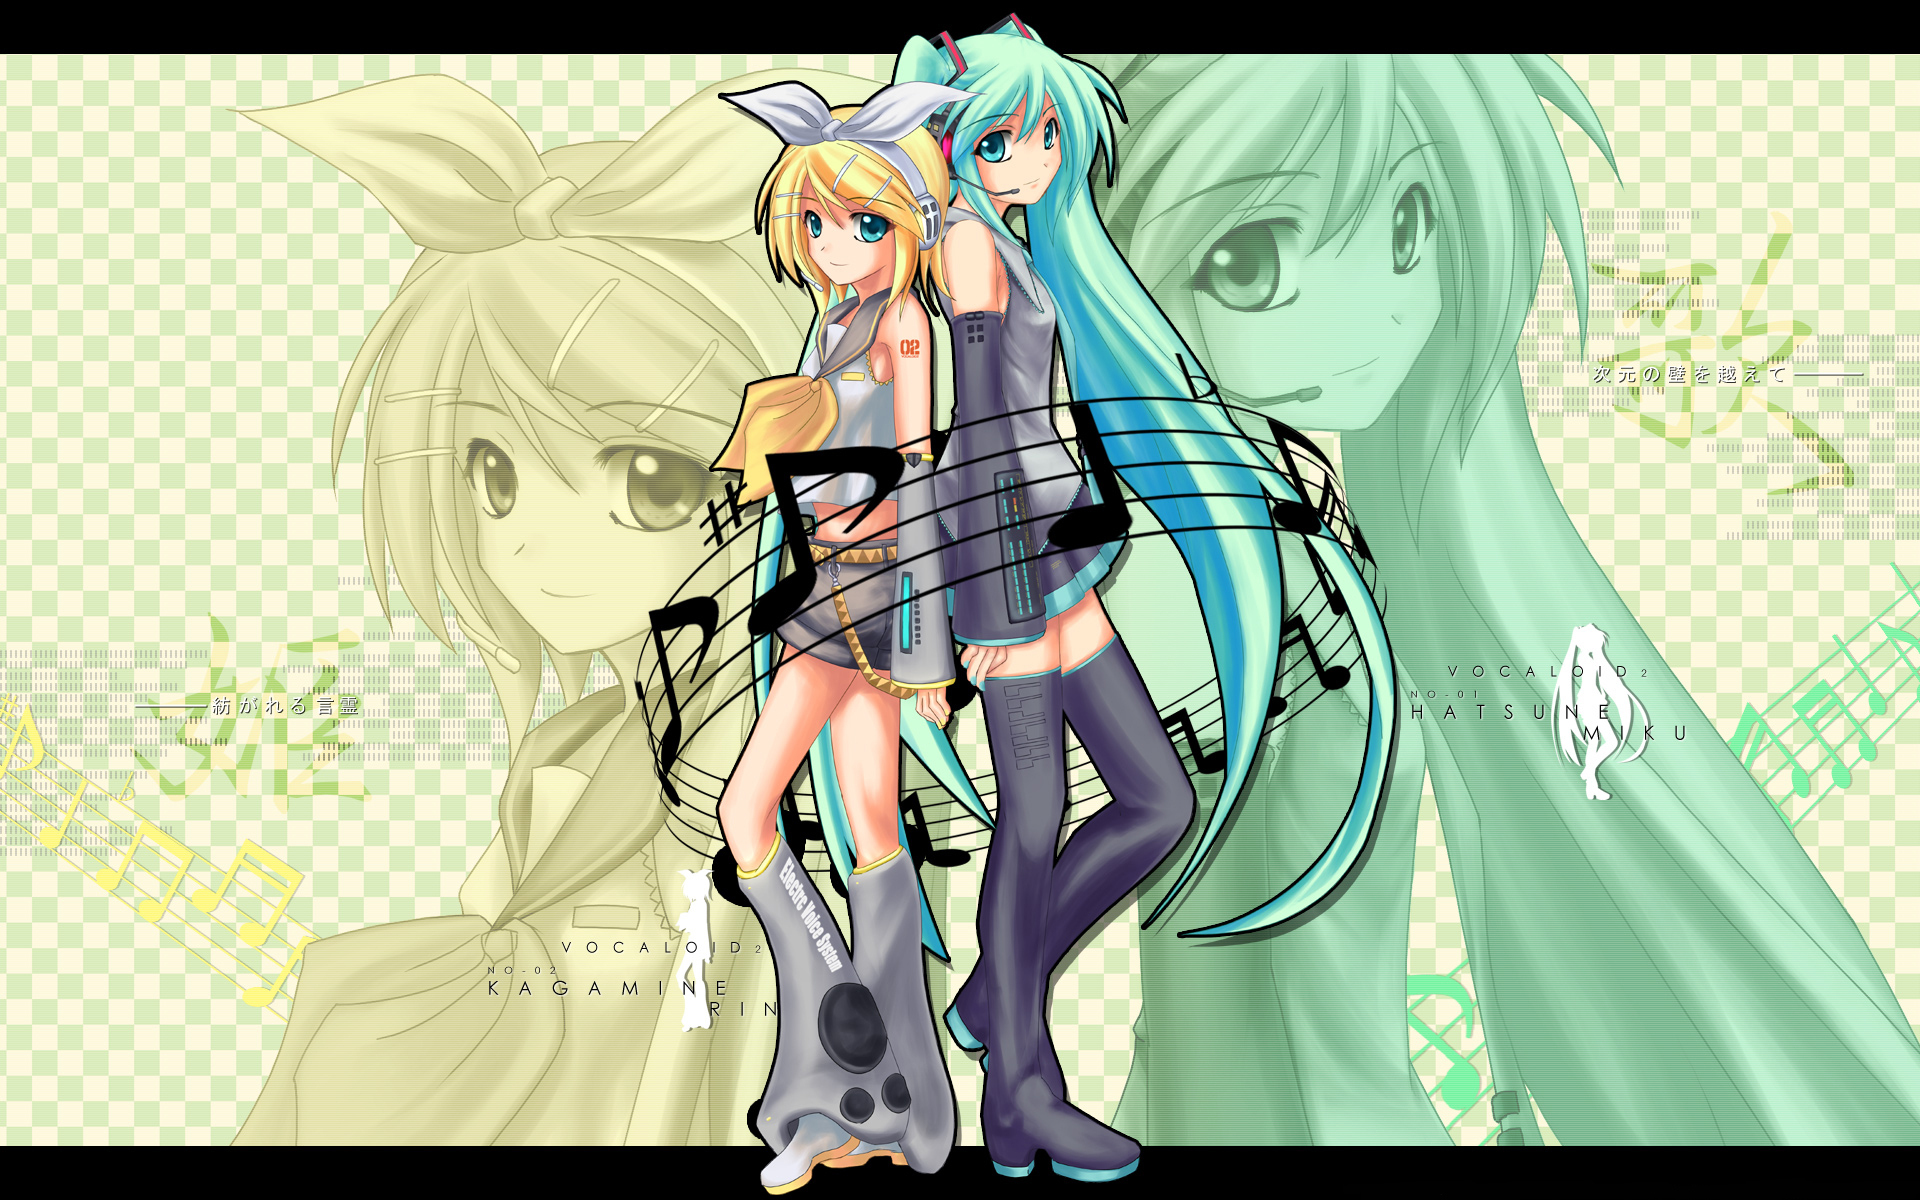 Descarga gratuita de fondo de pantalla para móvil de Vocaloid, Animado, Hatsune Miku, Rin Kagamine.